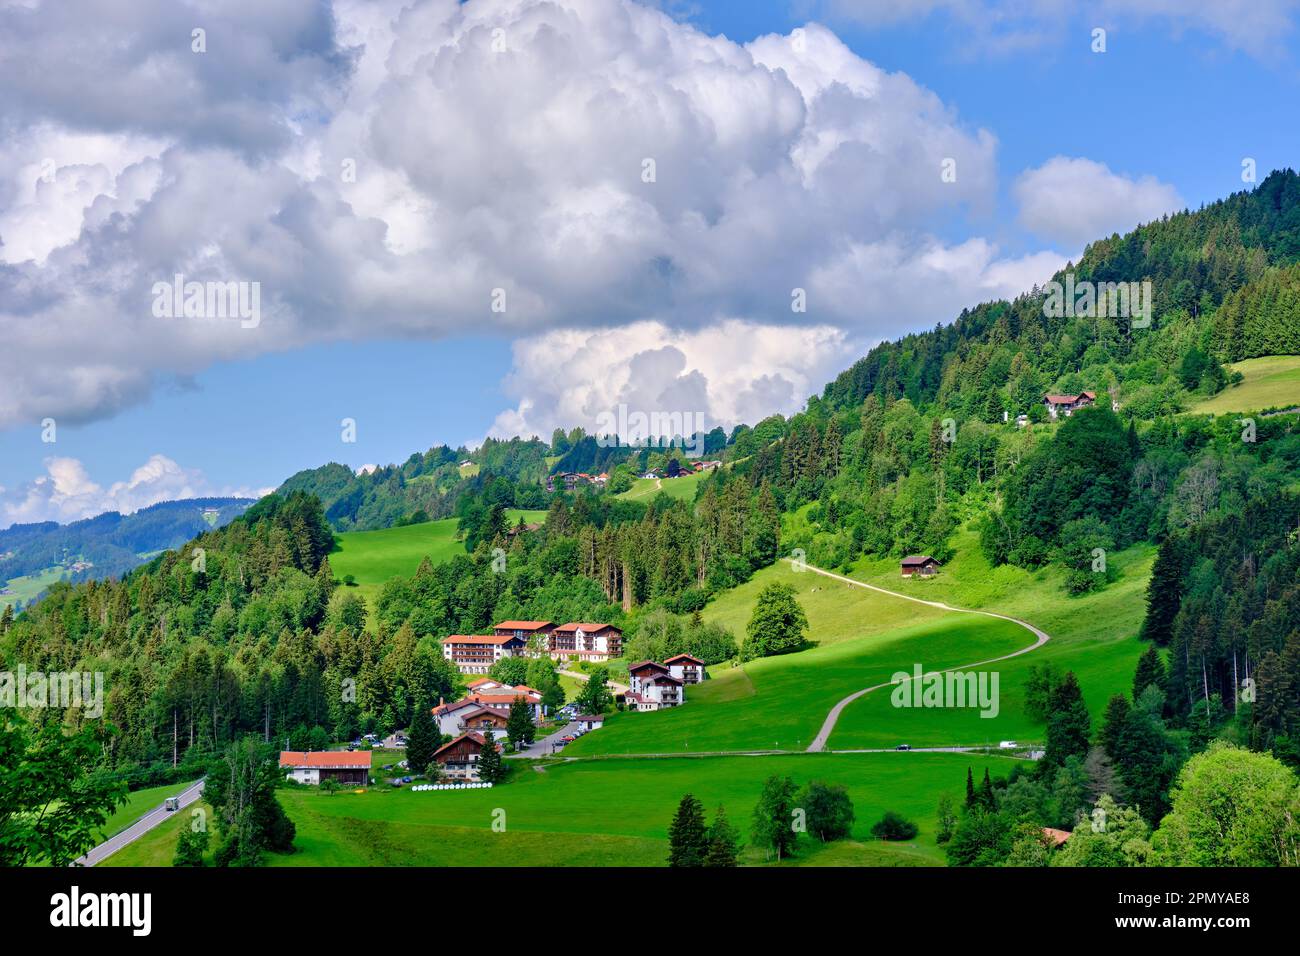 Paesaggio ad Allgaeu alla periferia della strada B 308 appartenente alla strada alpina tedesca nei pressi di Oberstaufen, Baviera, Germania, Europa. Foto Stock